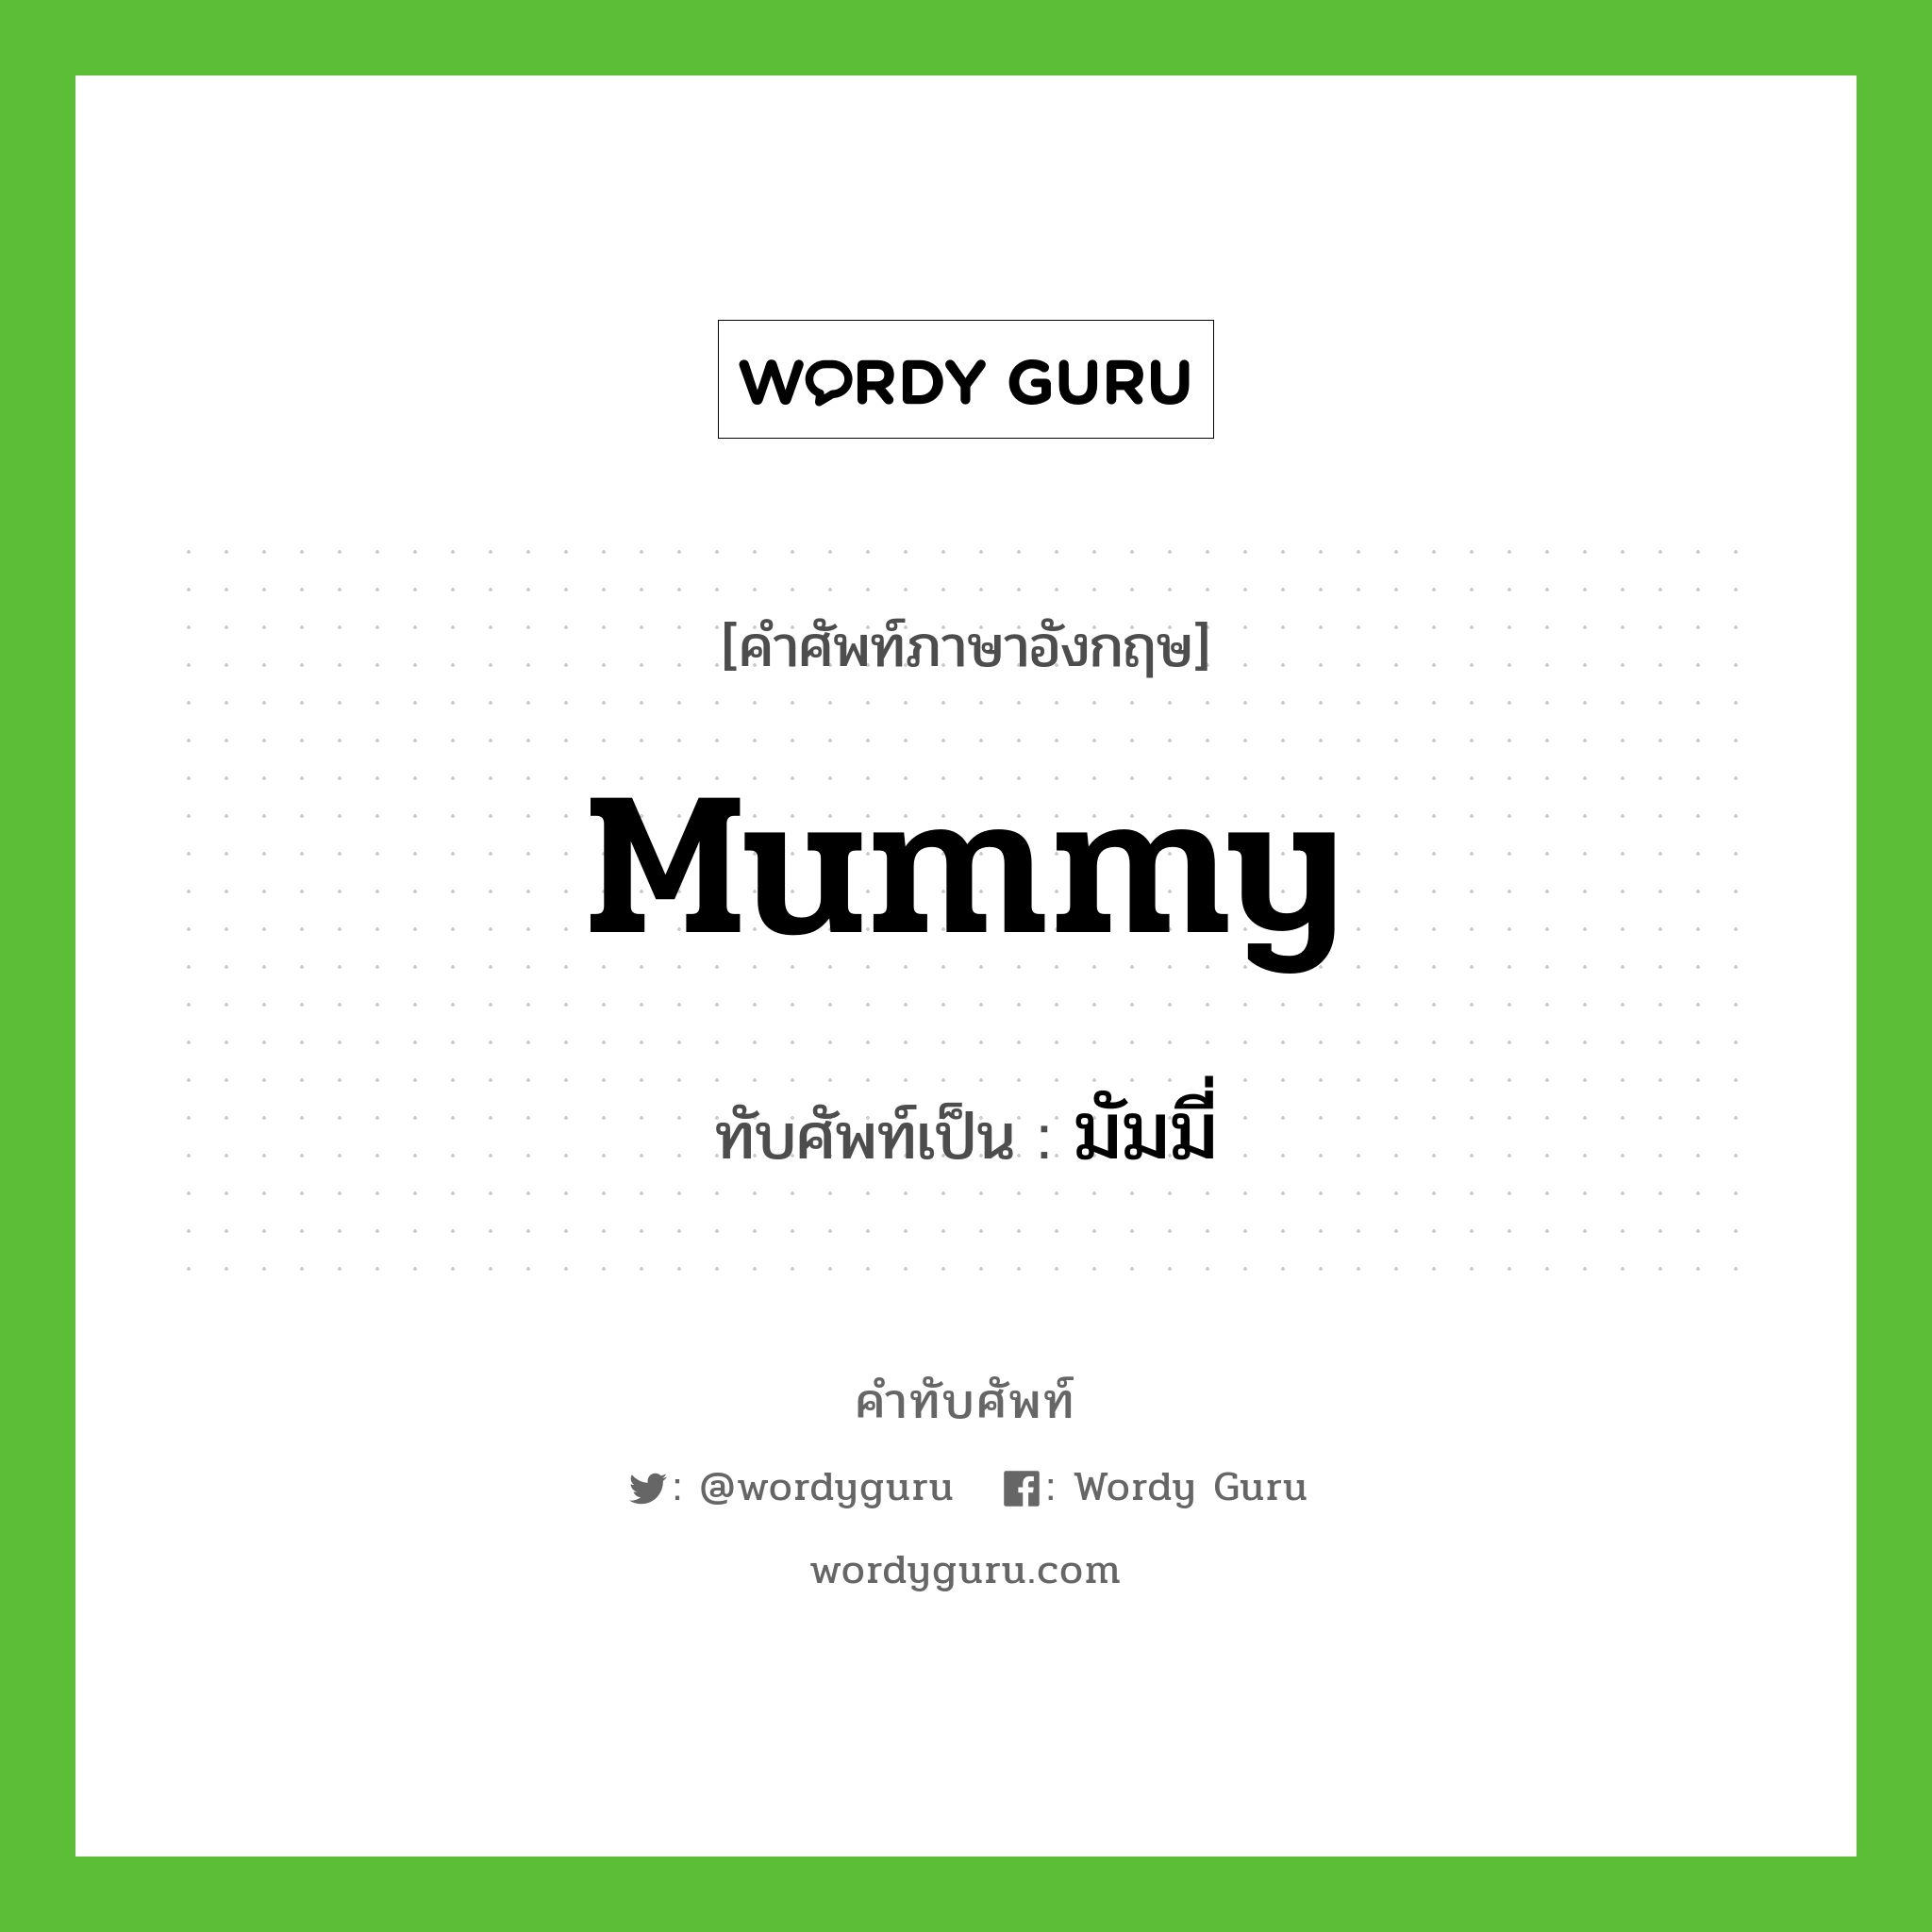 มัมมี่ เขียนอย่างไร?, คำศัพท์ภาษาอังกฤษ มัมมี่ ทับศัพท์เป็น mummy